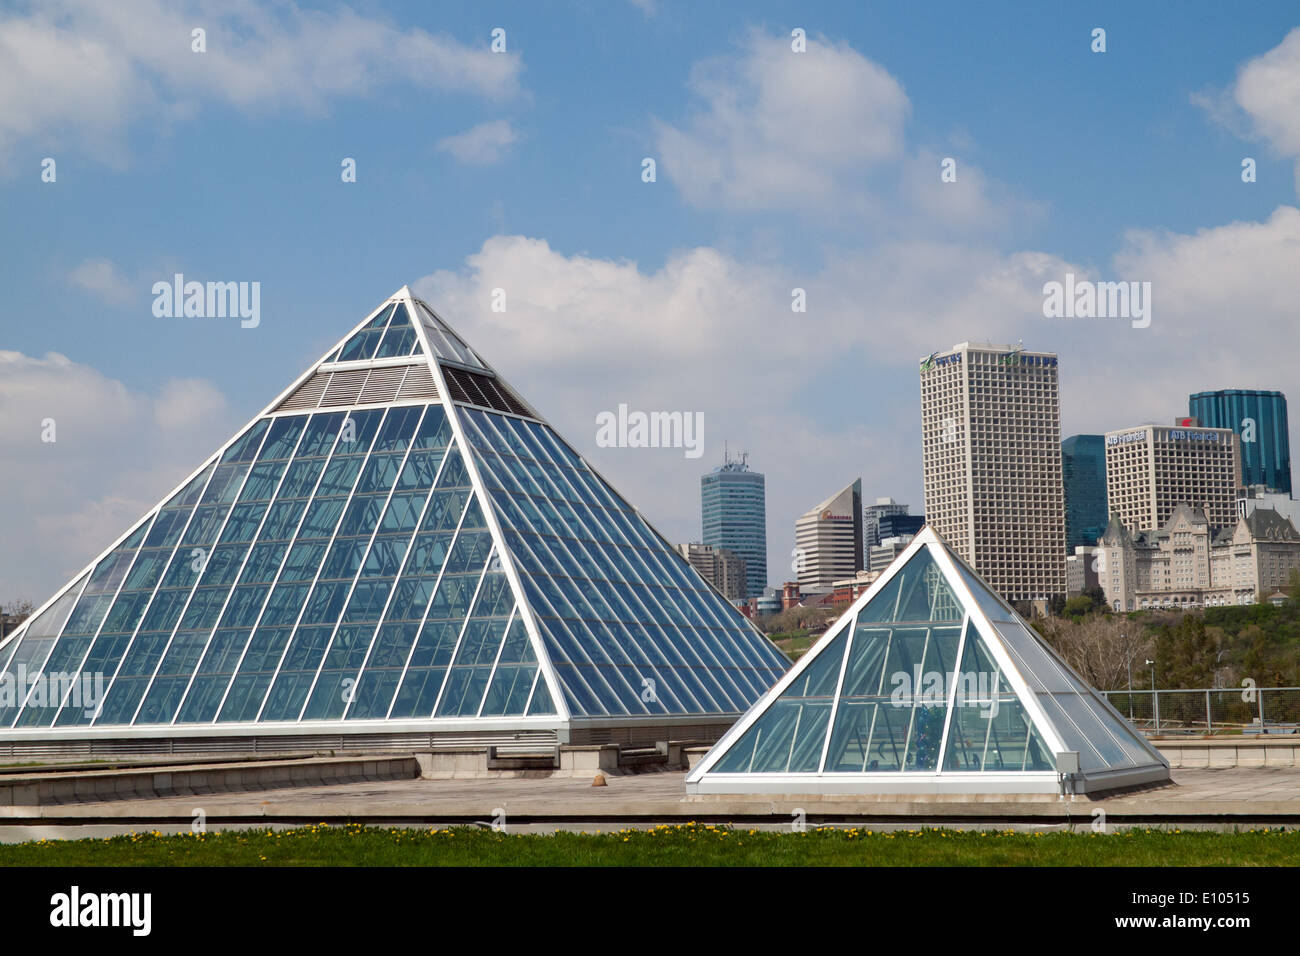 Die markante Glaspyramiden des Muttart Conservatory, ein botanischer Garten und bekannte Wahrzeichen von Edmonton, Alberta, Kanada. Stockfoto